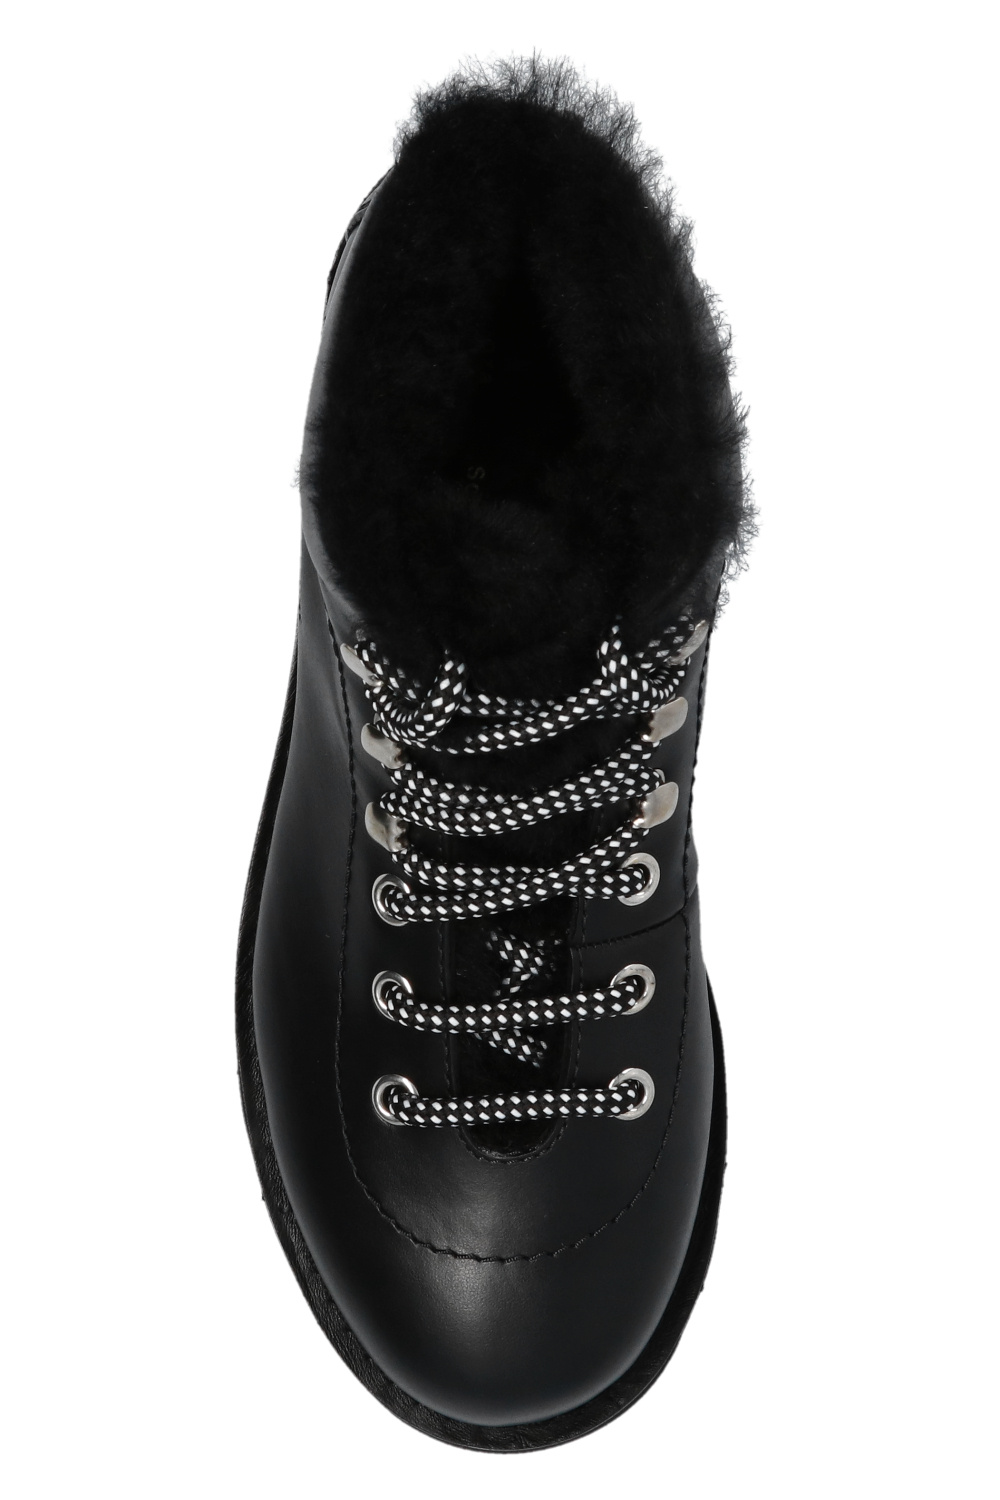 Proenza Schouler ‘Heidi Folk’ boots with logo